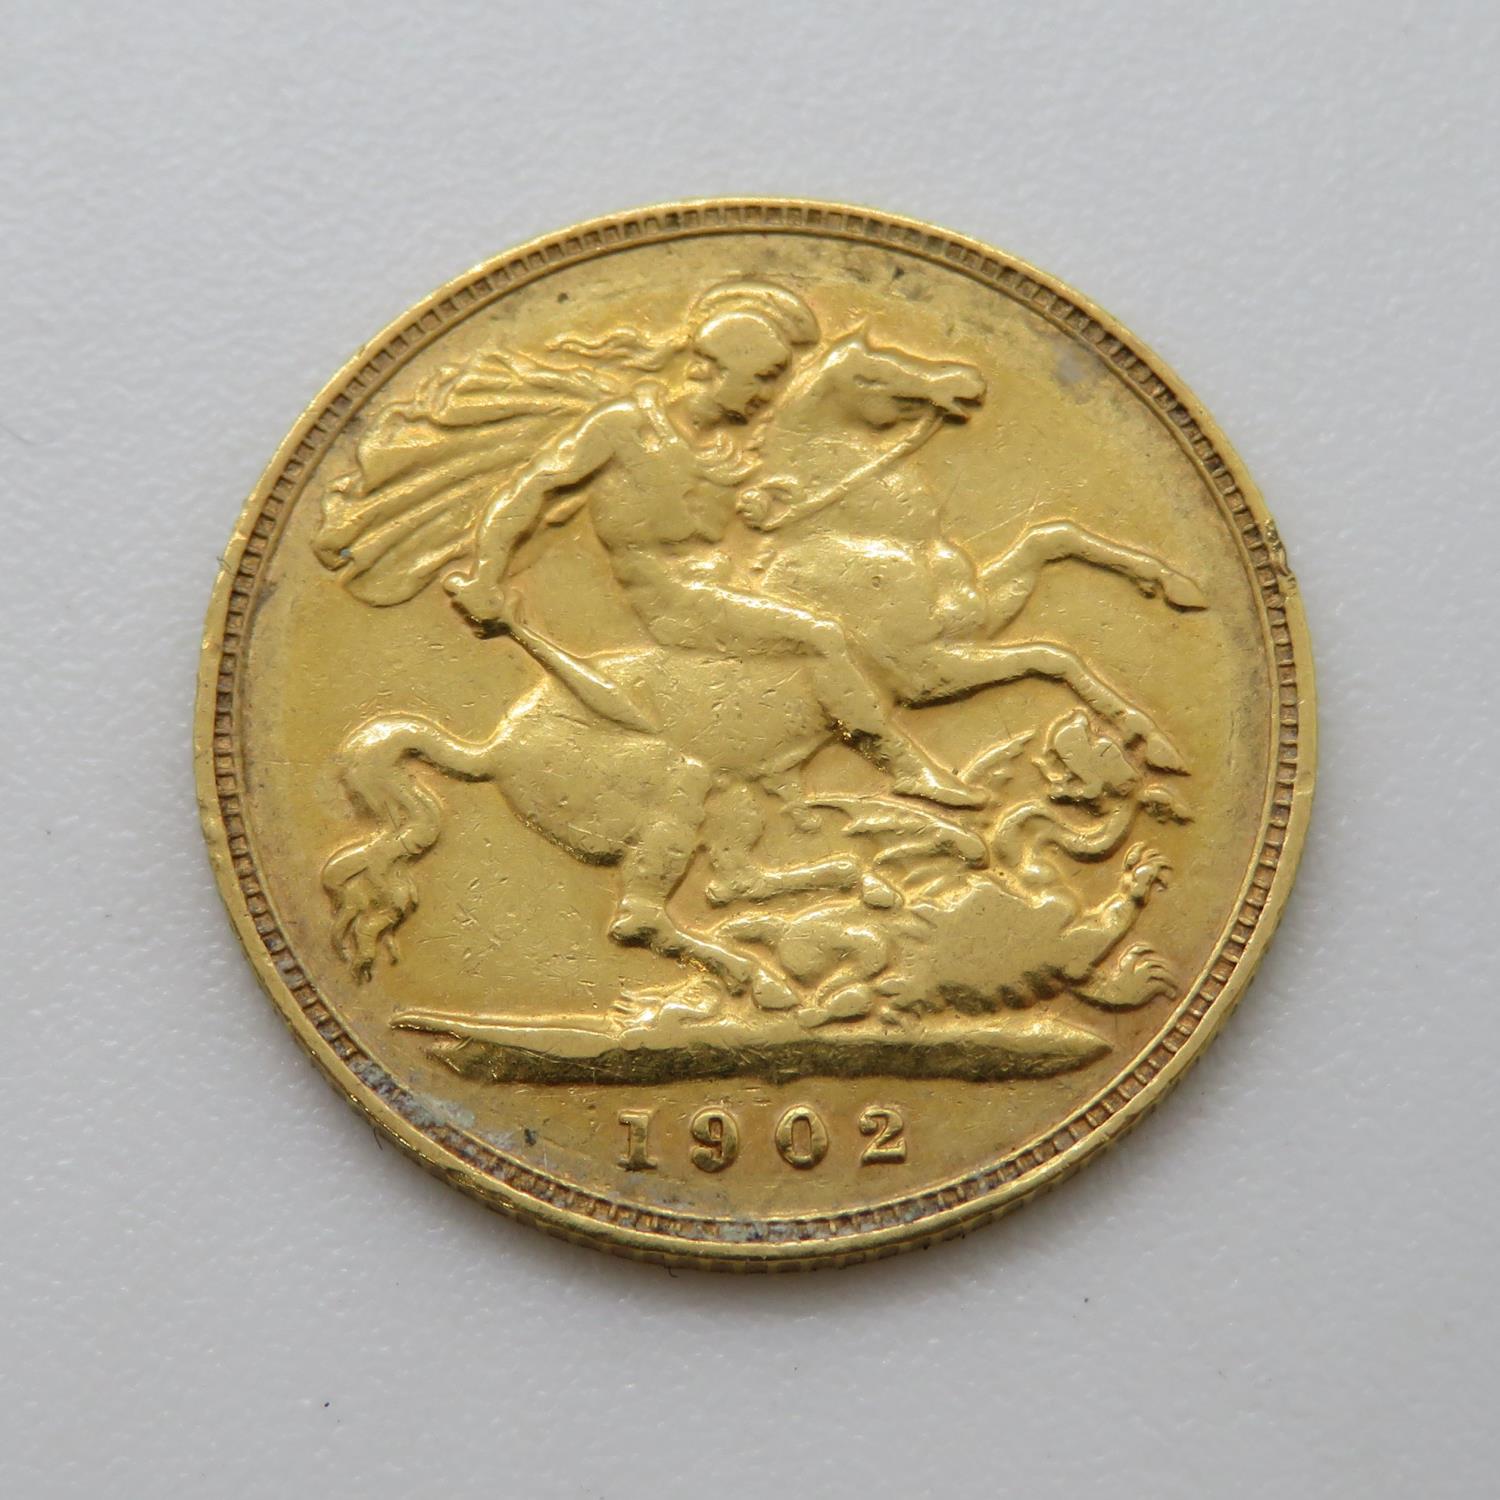 1902 half sovereign